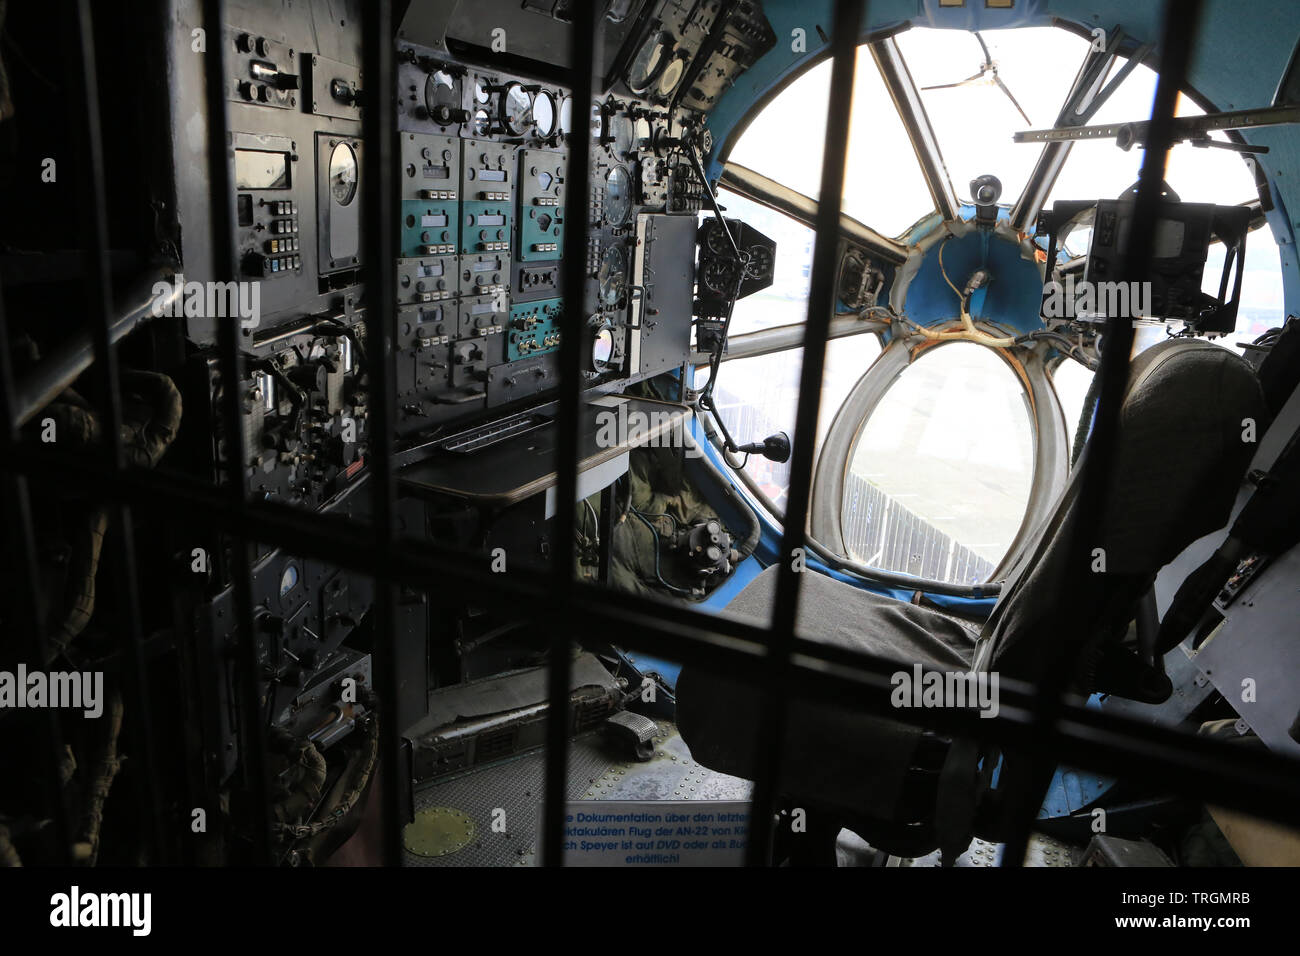 Cabine de pilotage. Antonov An-22. Musée des techniques de Spire. Technik Museum Speyer. Allemagne. Stock Photo